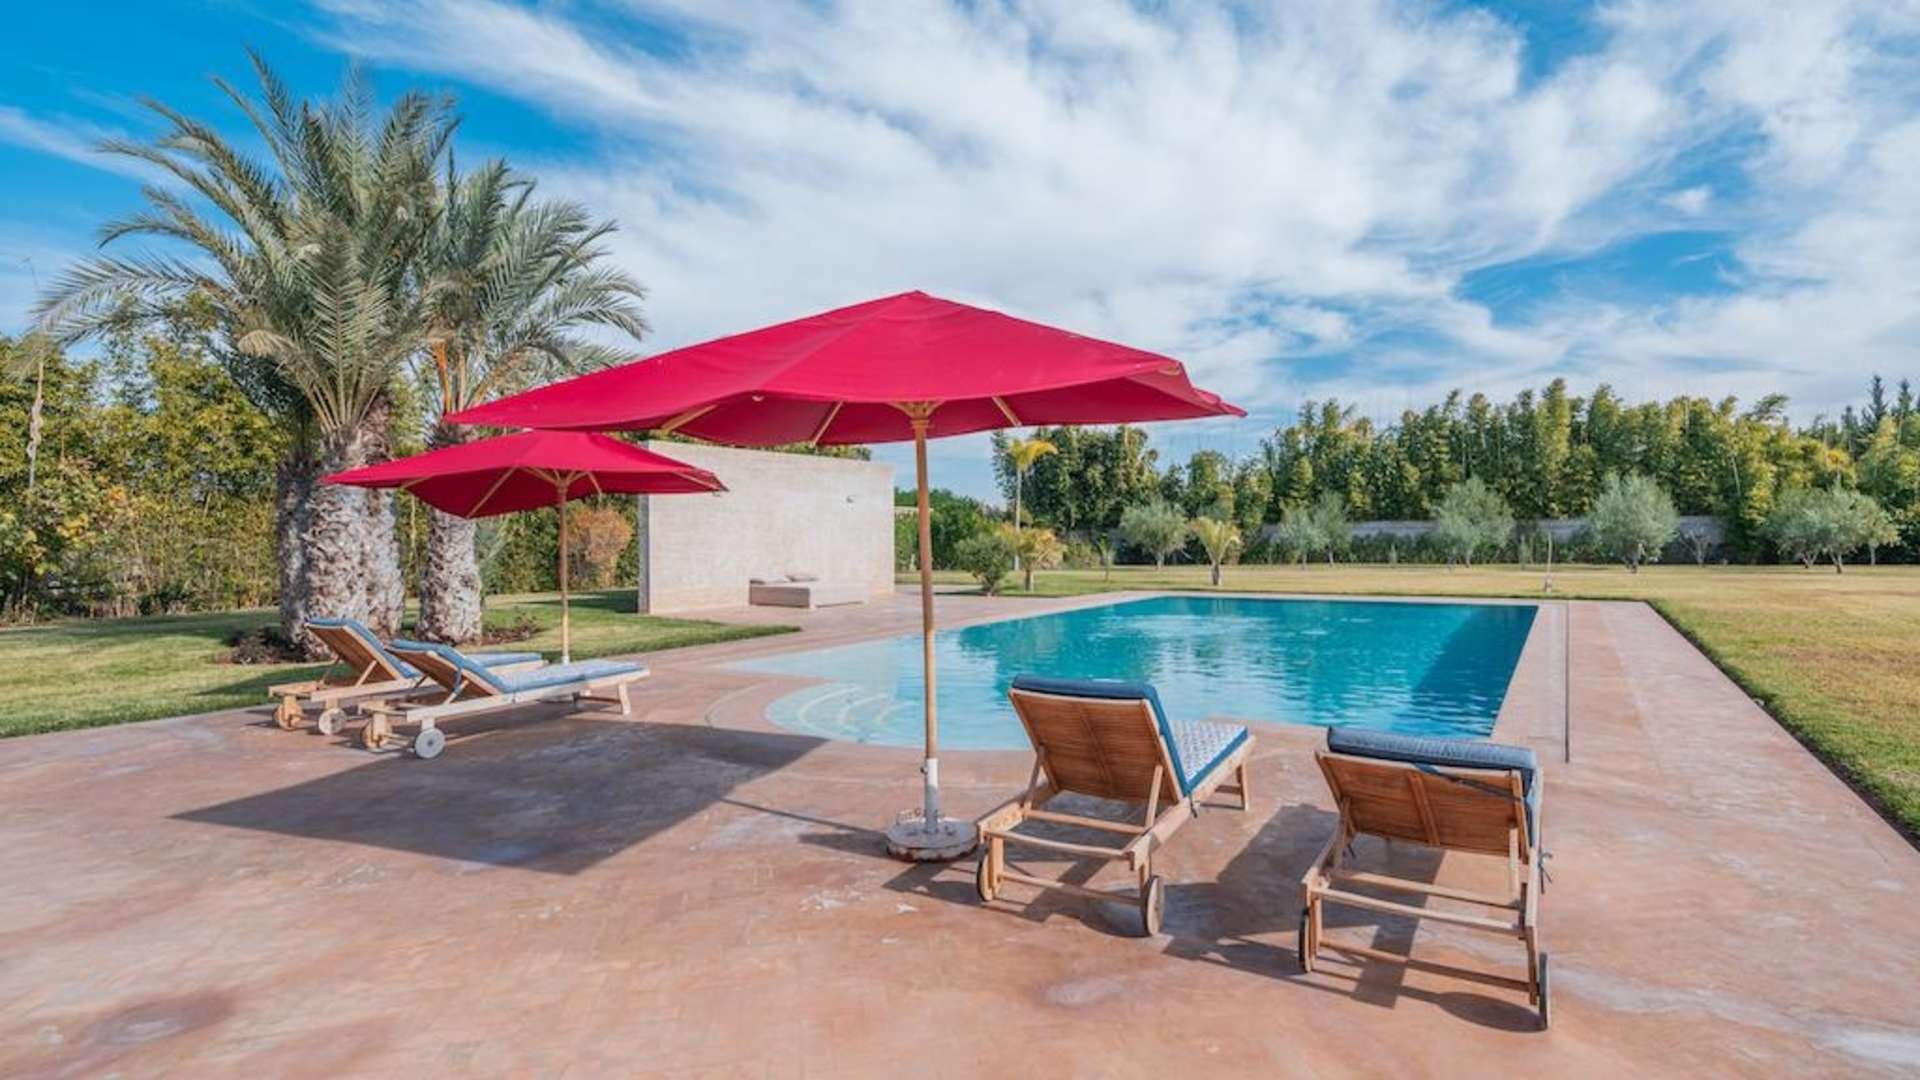 Location de vacances,Villa,Superbe villa 6 chambres avec piscine privée à Marrakech ,Marrakech,Route d'Ouarzazate